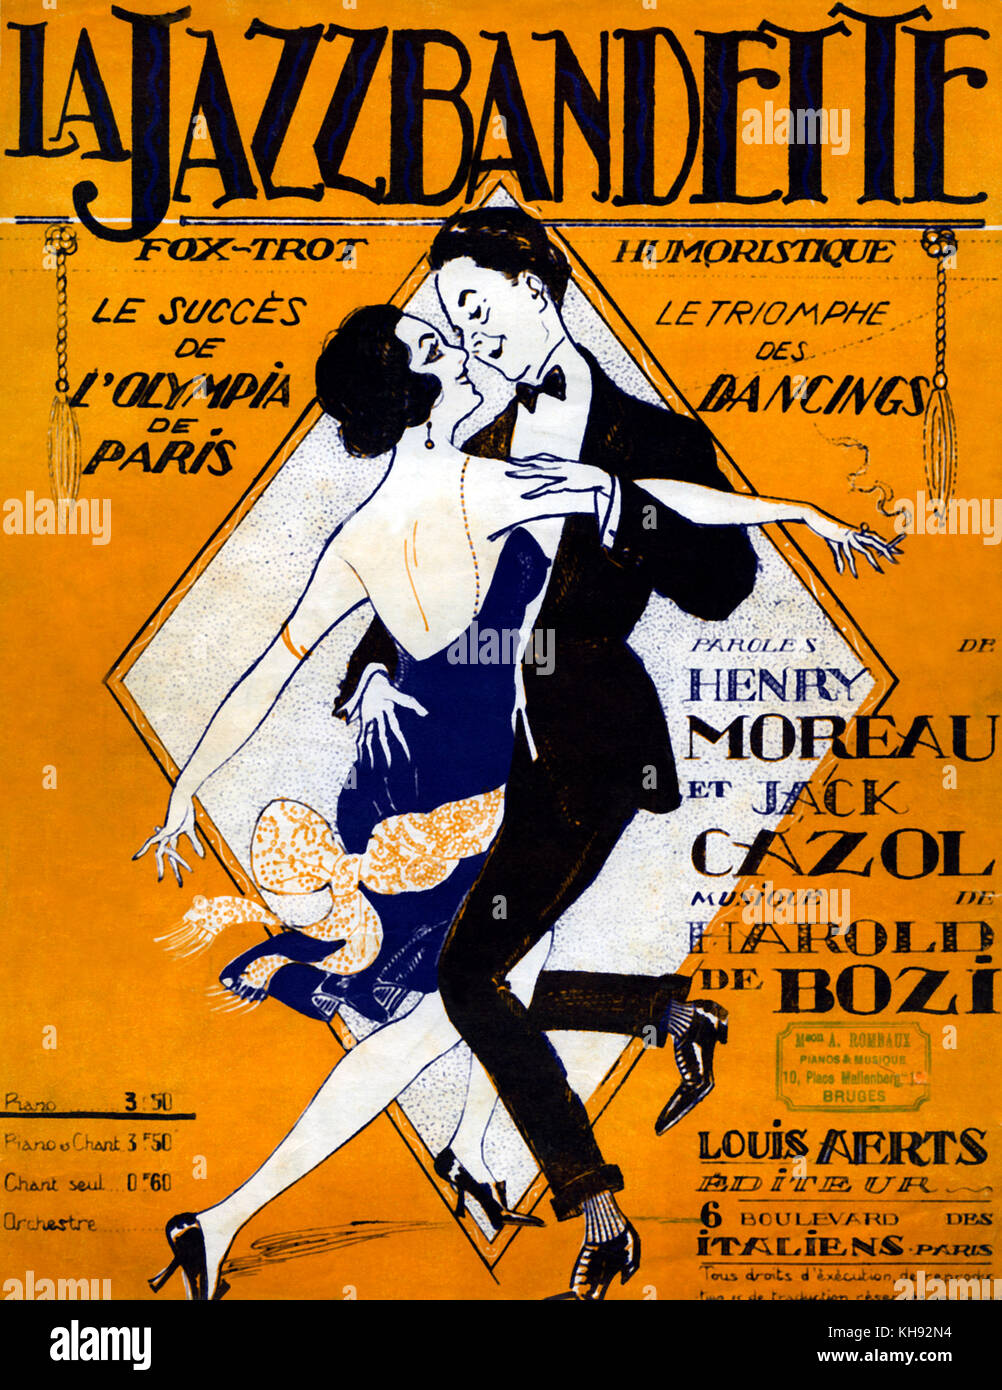 'La Jazzbandette'-score Abdeckung für Fox-Trot, 1921. Musik von Harold Bozi und Lyrics von Henry Moreau und Jack Cazol. Fox-Trot Humoristique' ('humorvoll Fox-Trot') in Olympia, Paris durchgeführt. Stockfoto